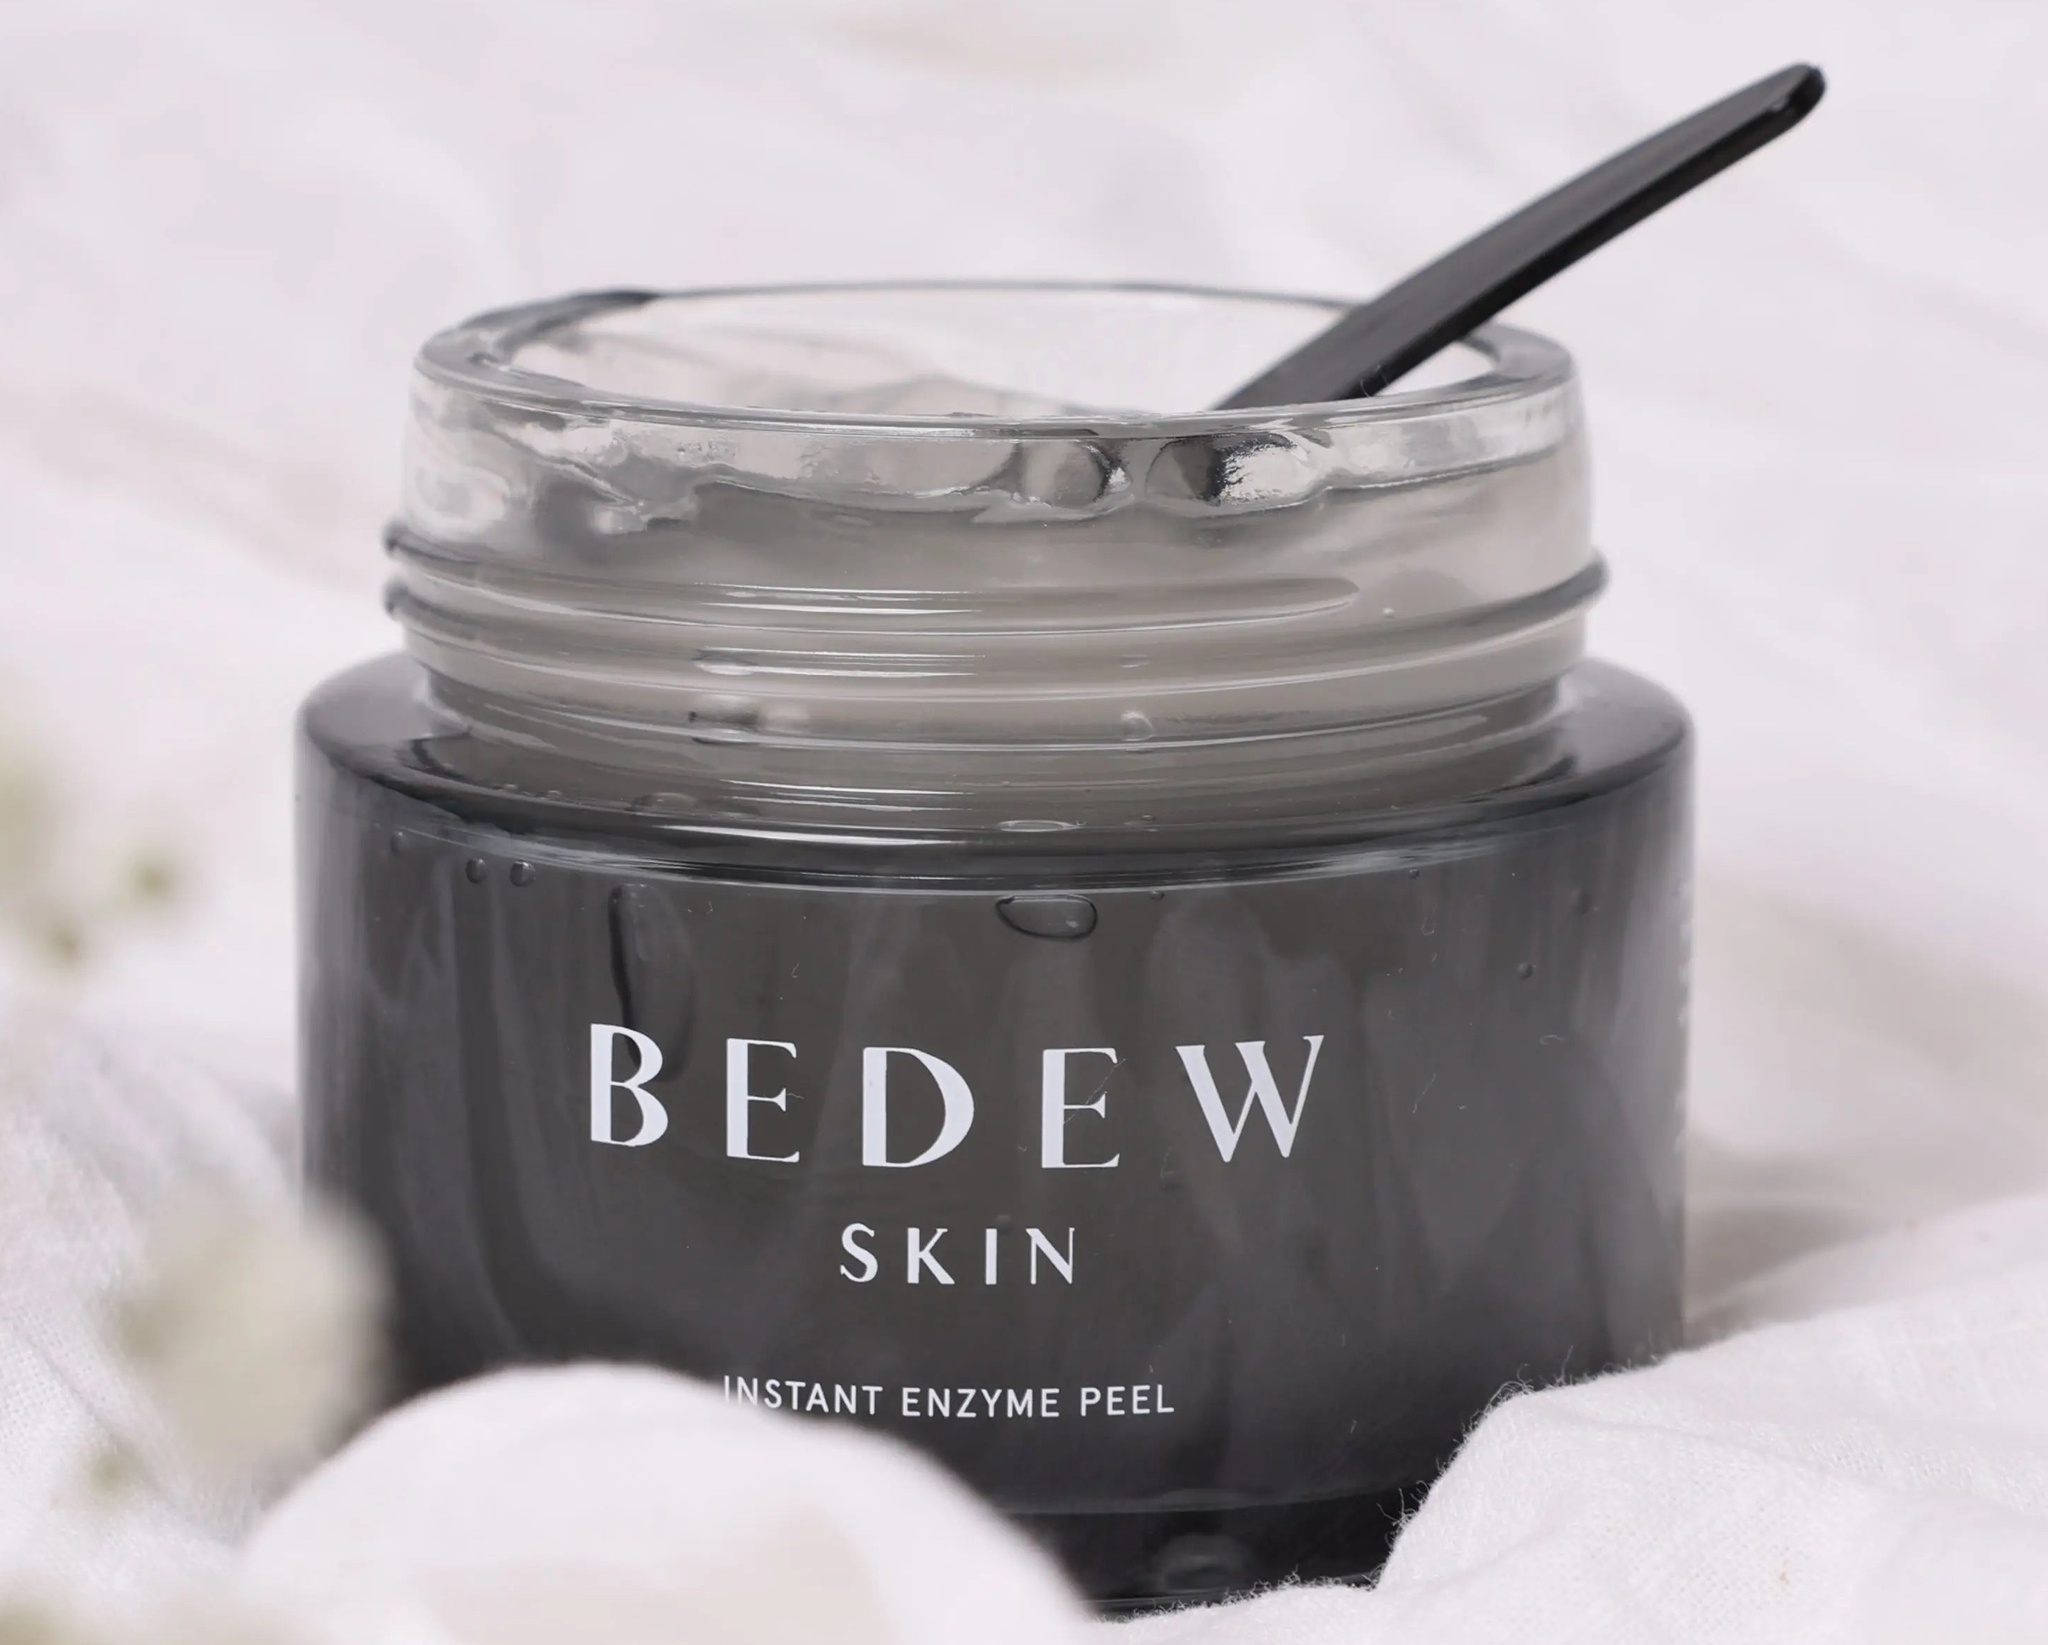 Bedew Skin Instant Enzyme Peel